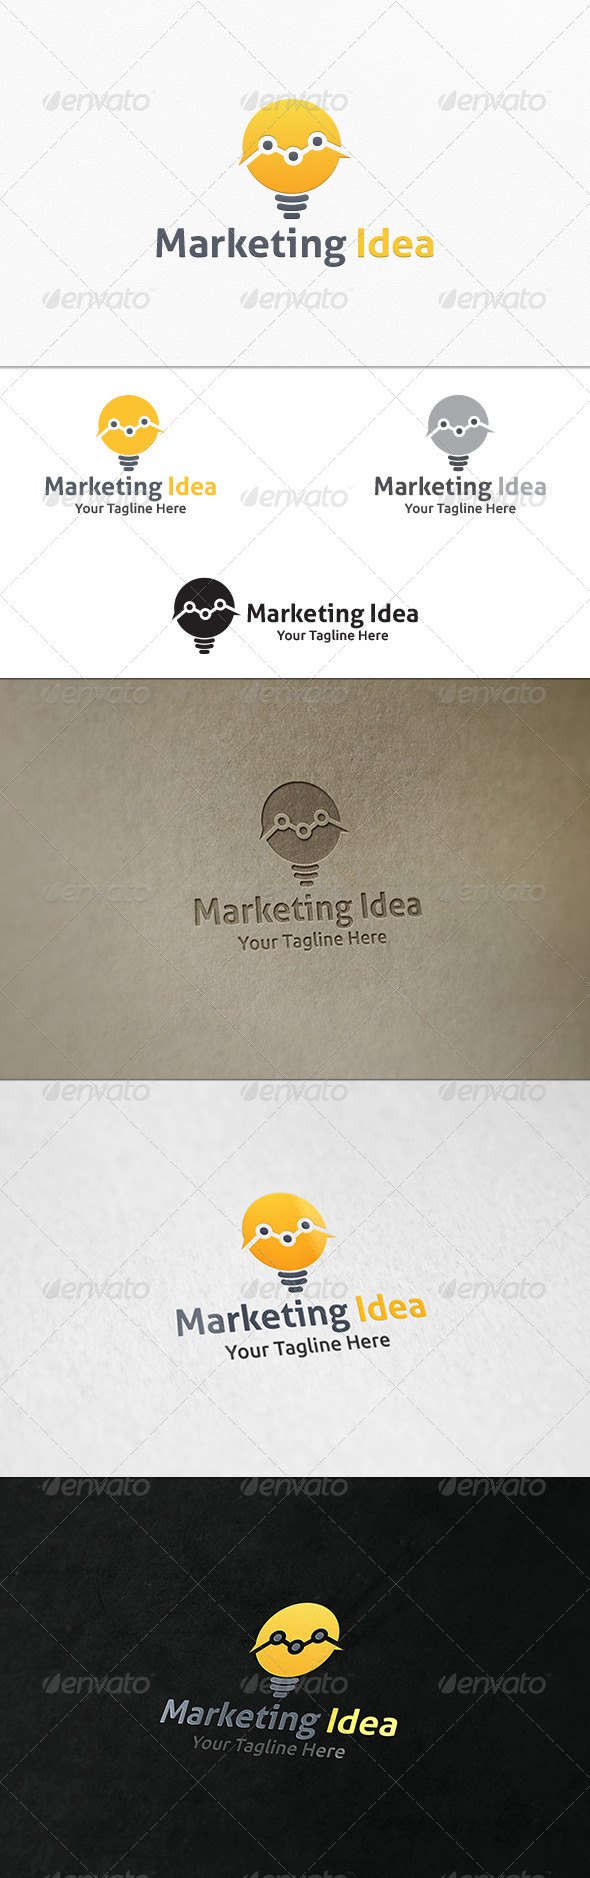 GraphicRiver Marketing Idea Logo Template 7657659